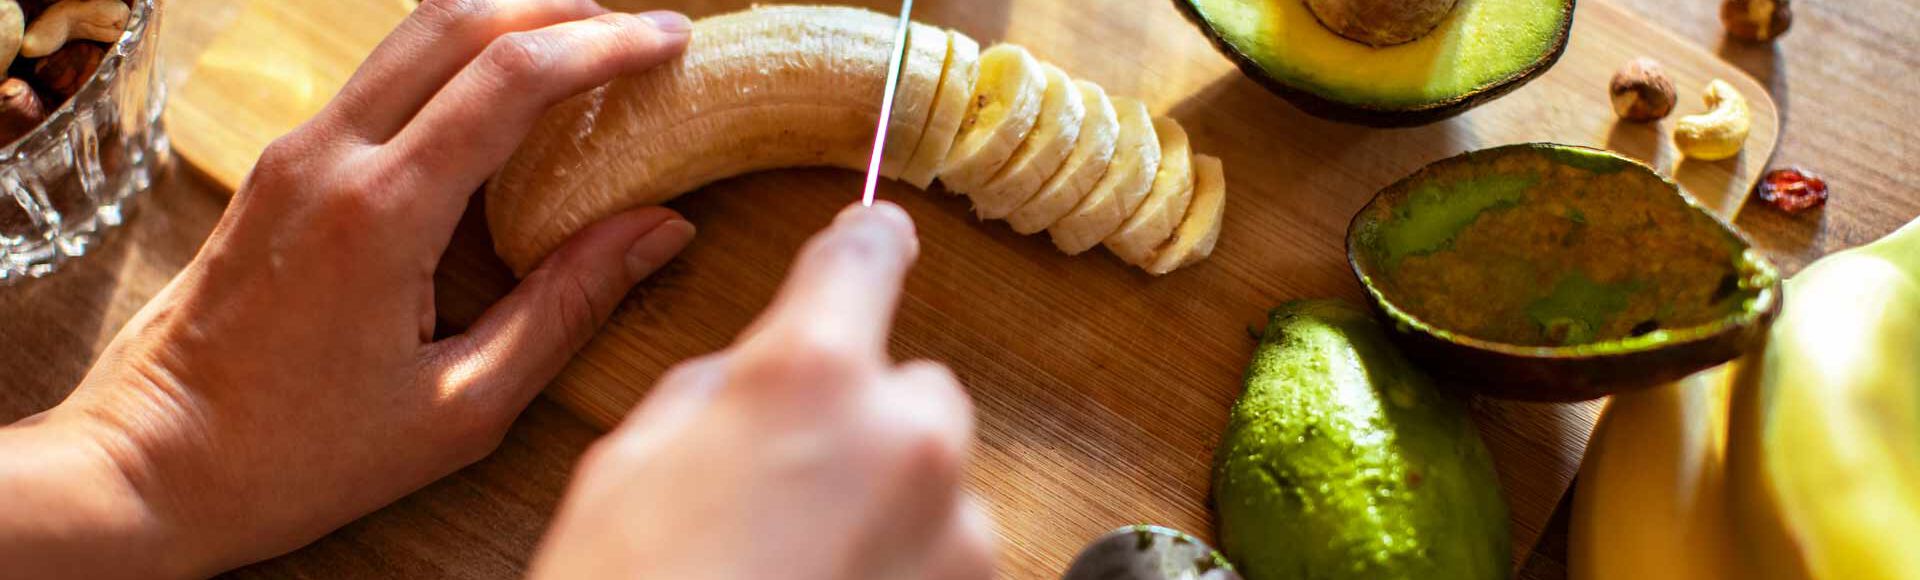 Banana sendo cortada